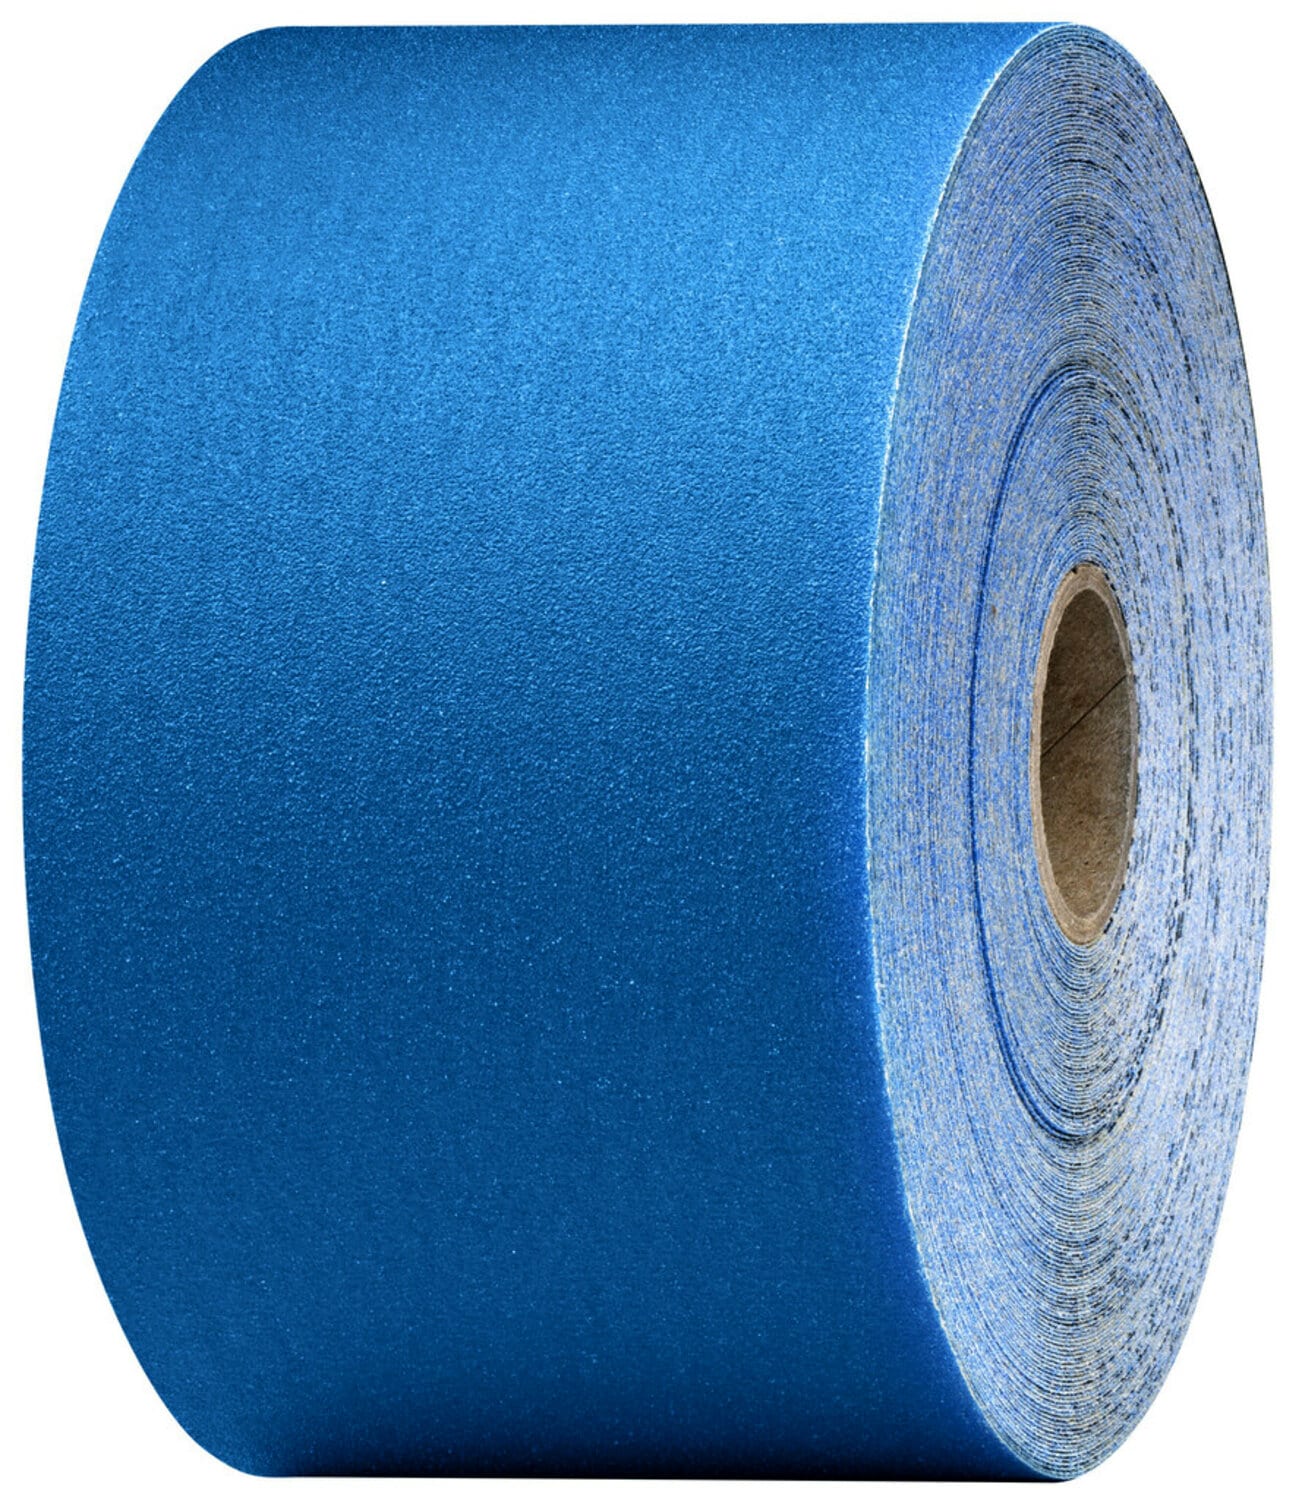 7100215728 - 3M Stikit Blue Abrasive Sheet Roll, 36223, 240 grade, 2-3/4 in x 30
yd, 5 rolls per case